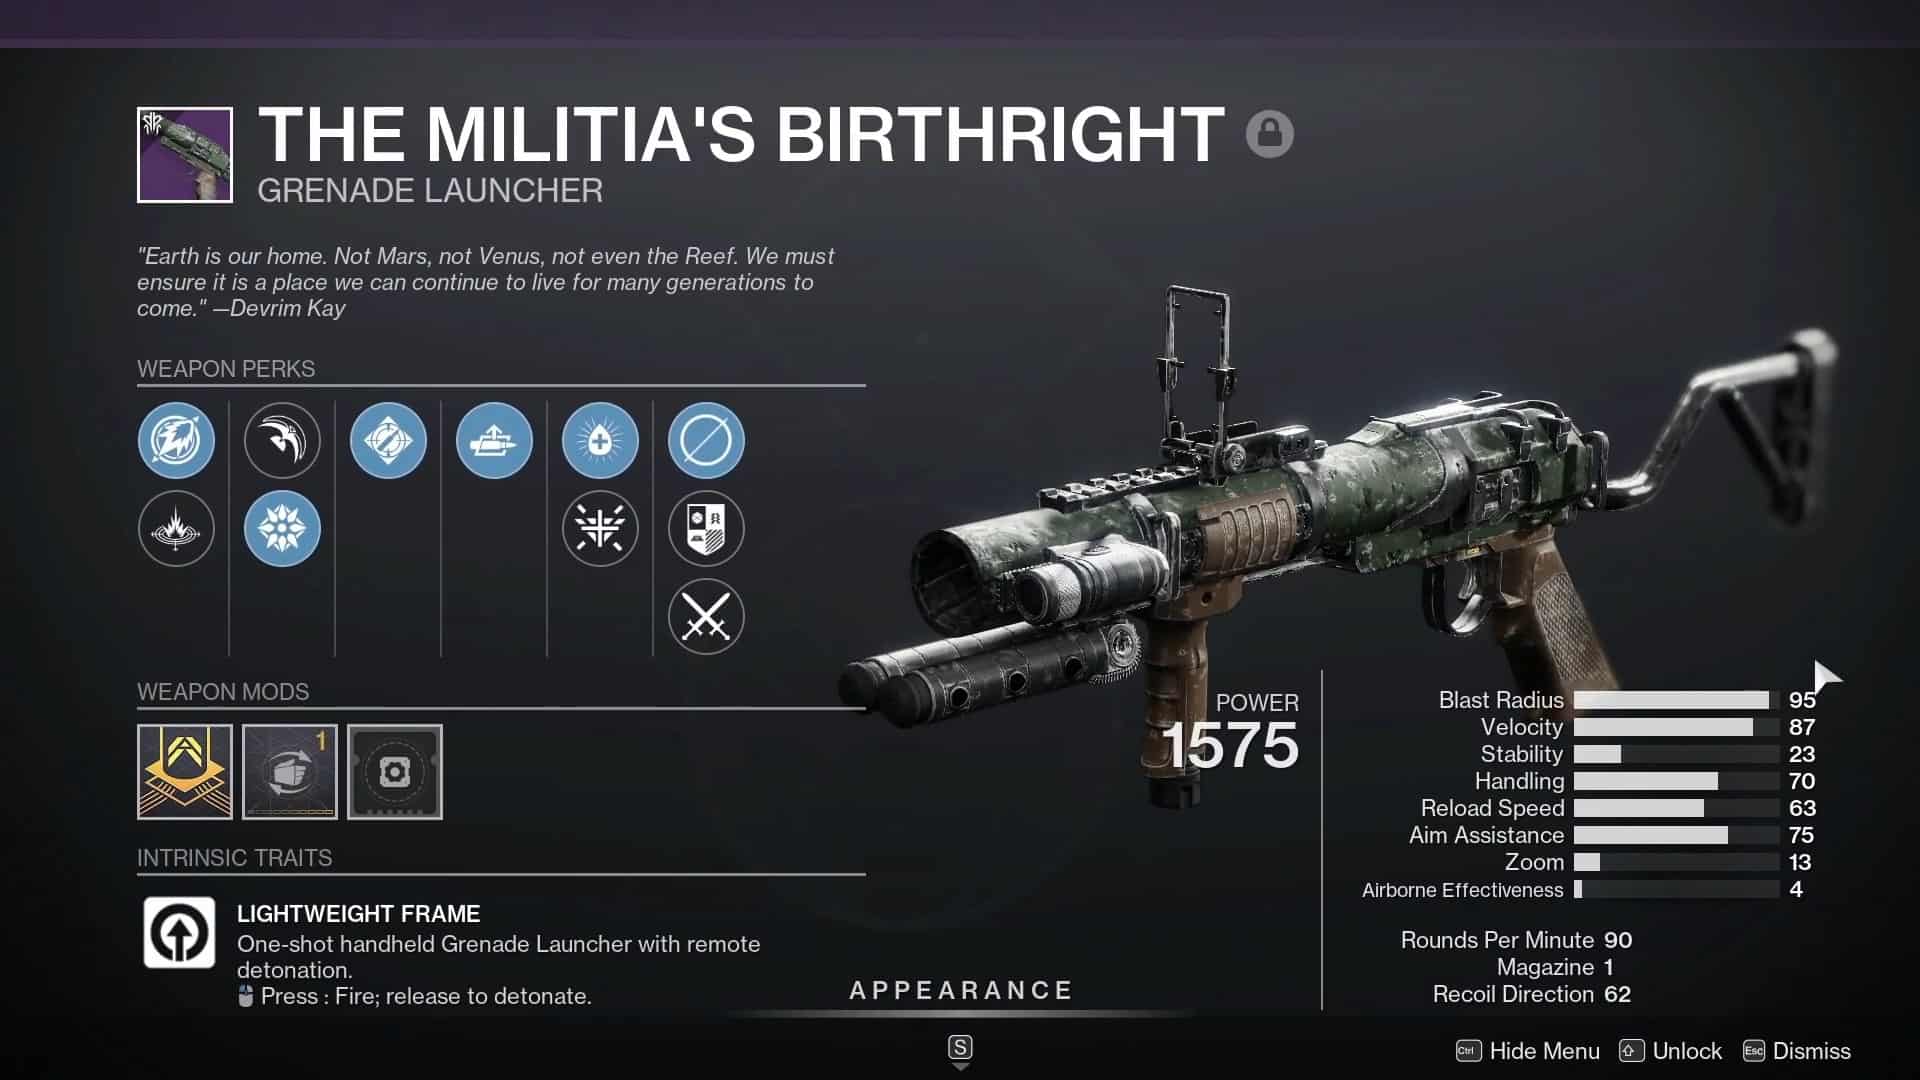 The Militia's Birthright roll